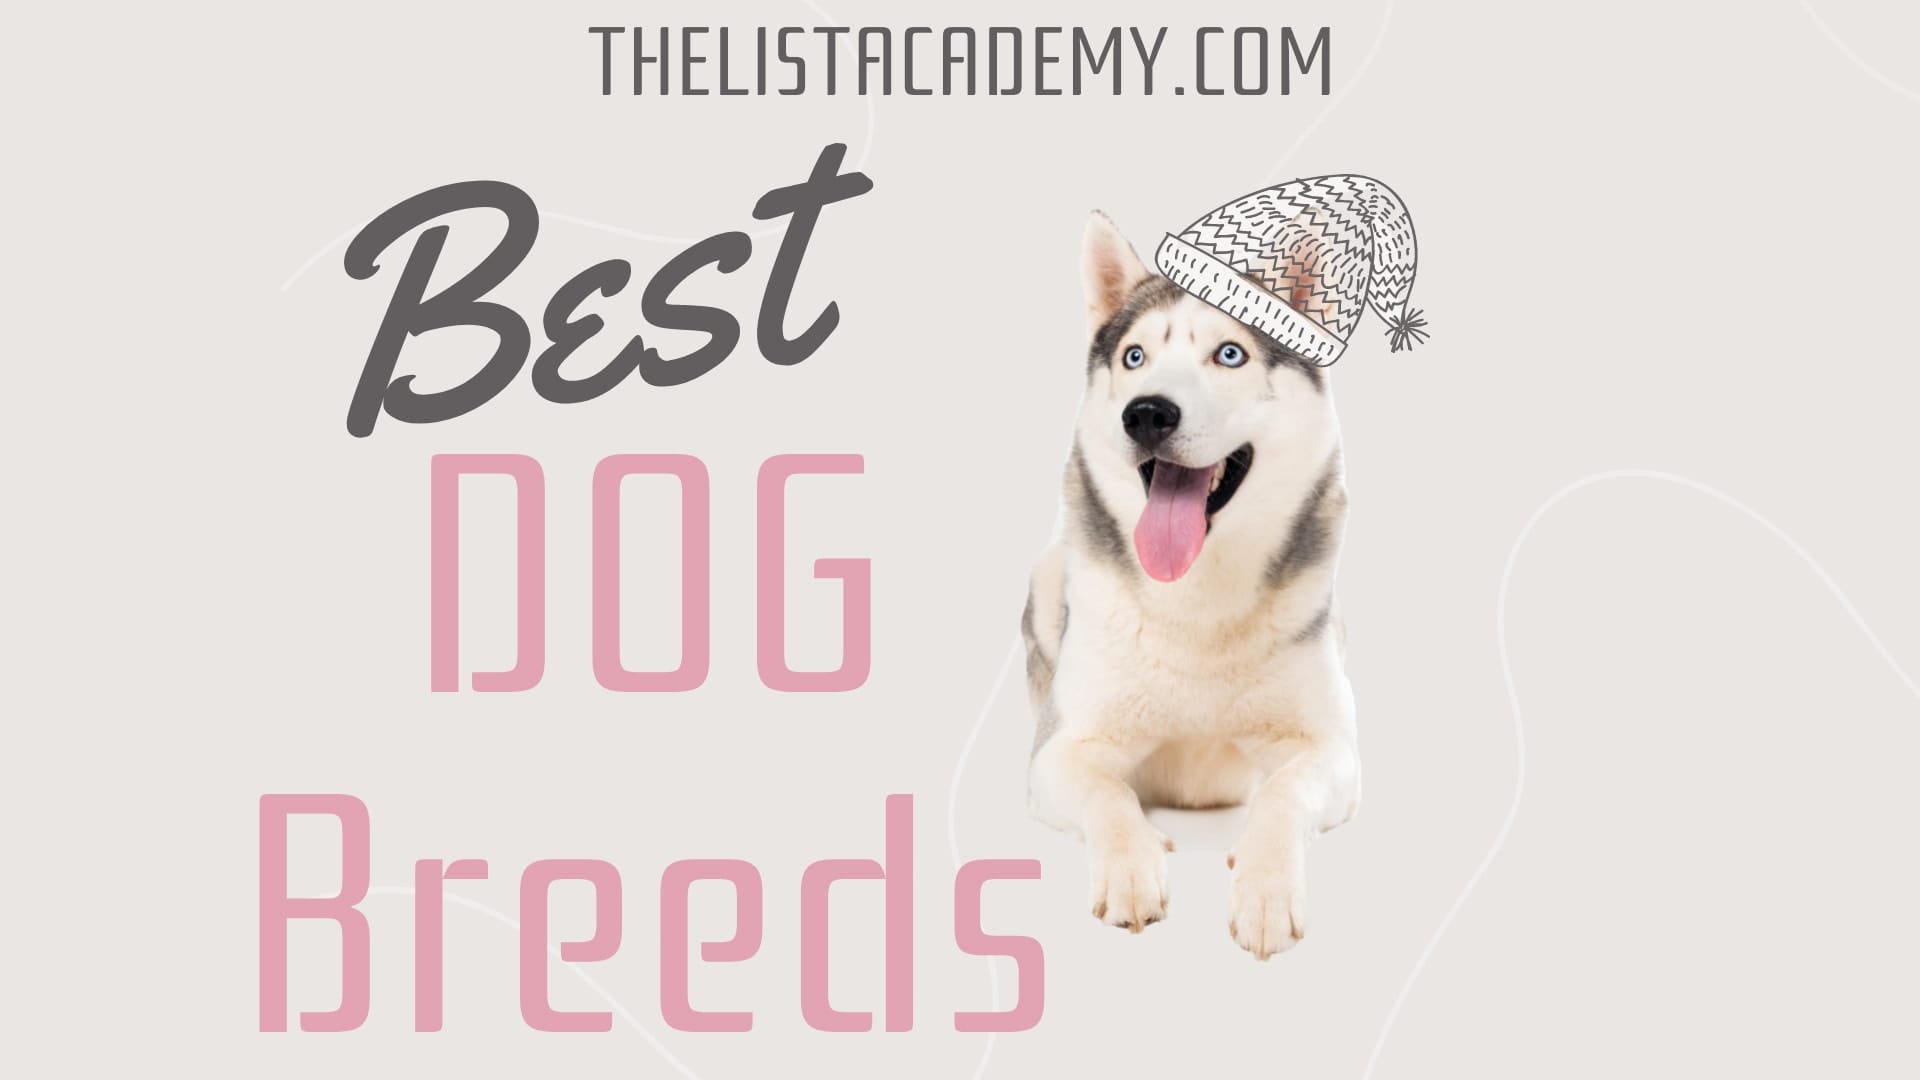 Cover Image For List : 186 Best Dog Breeds | Top Dog Breeds |